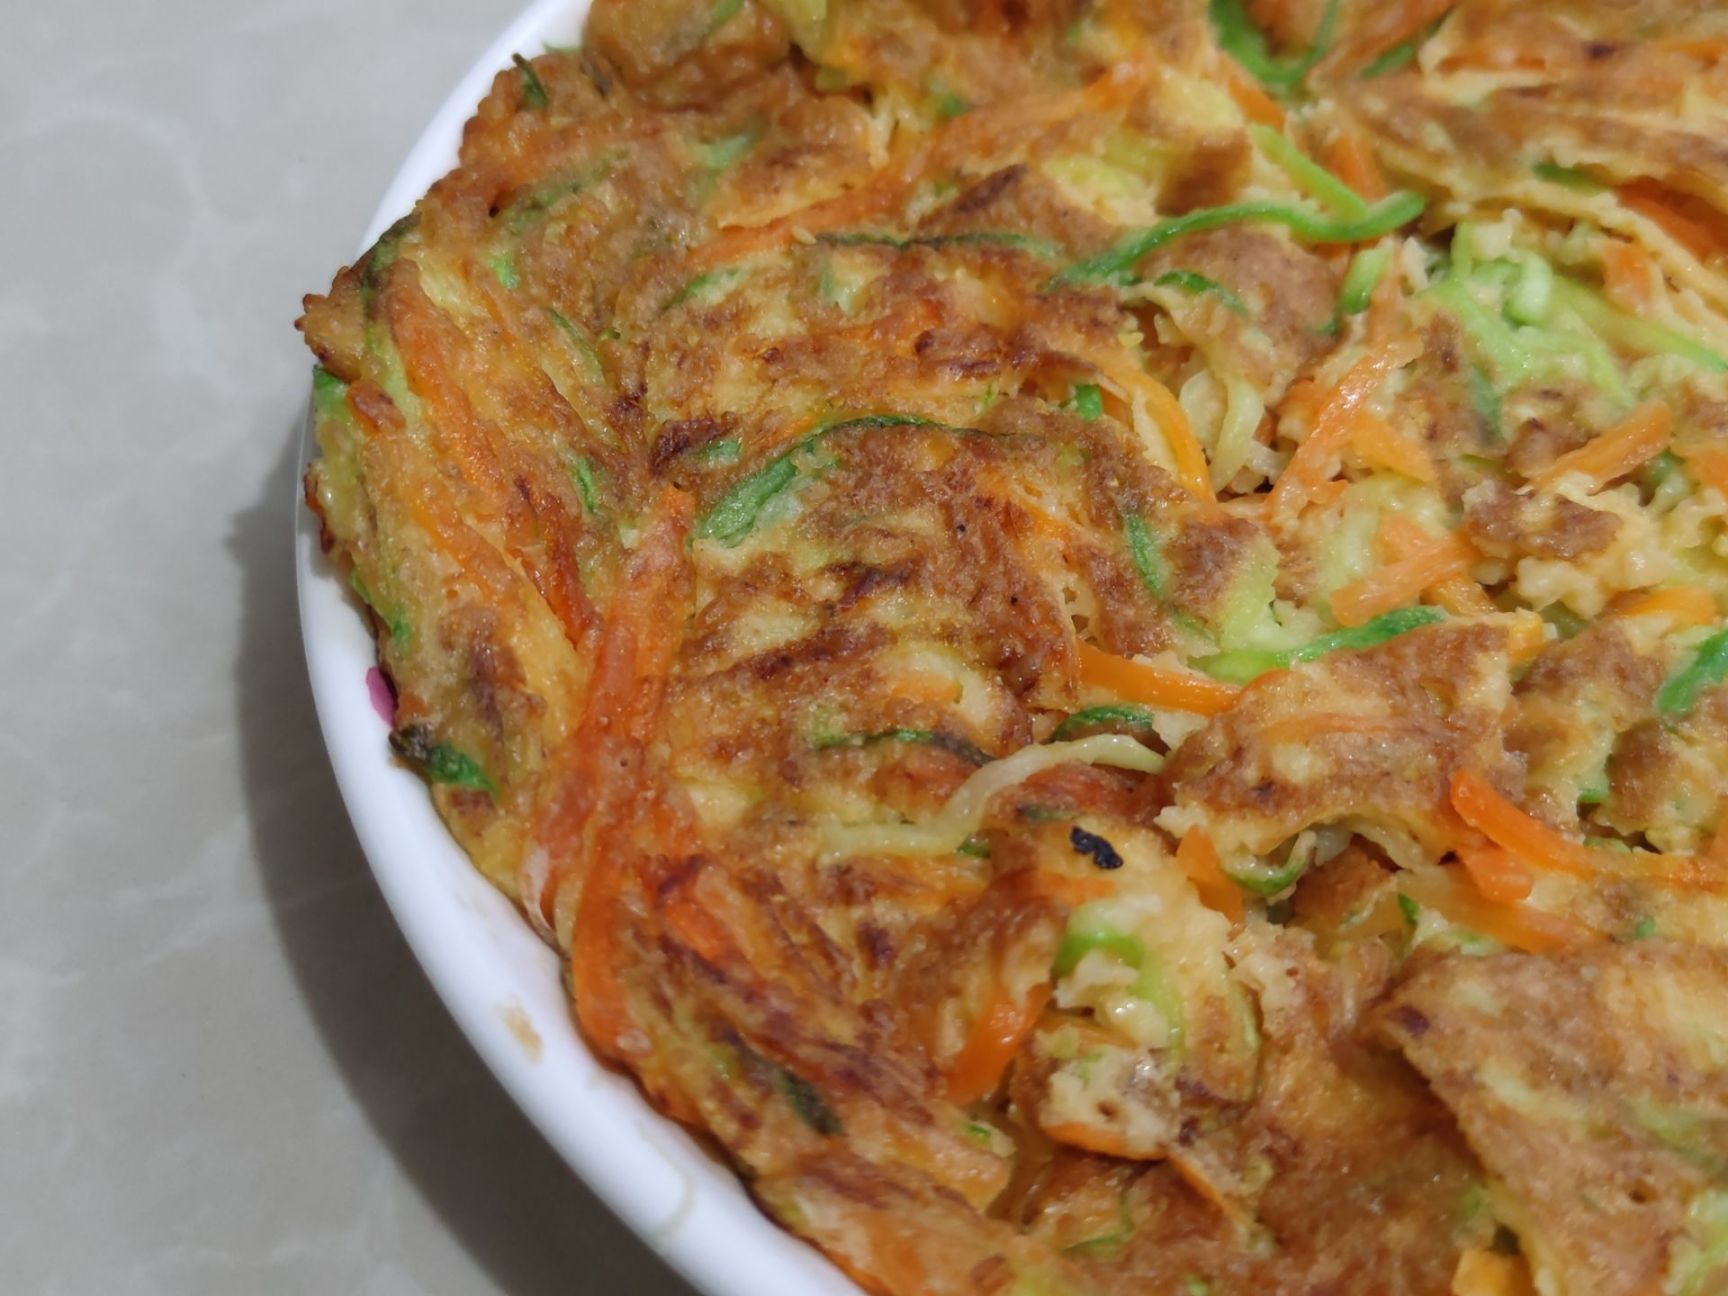 【小饭盒】家常菜系列:拍黄瓜与西葫芦丝煎蛋-第8张